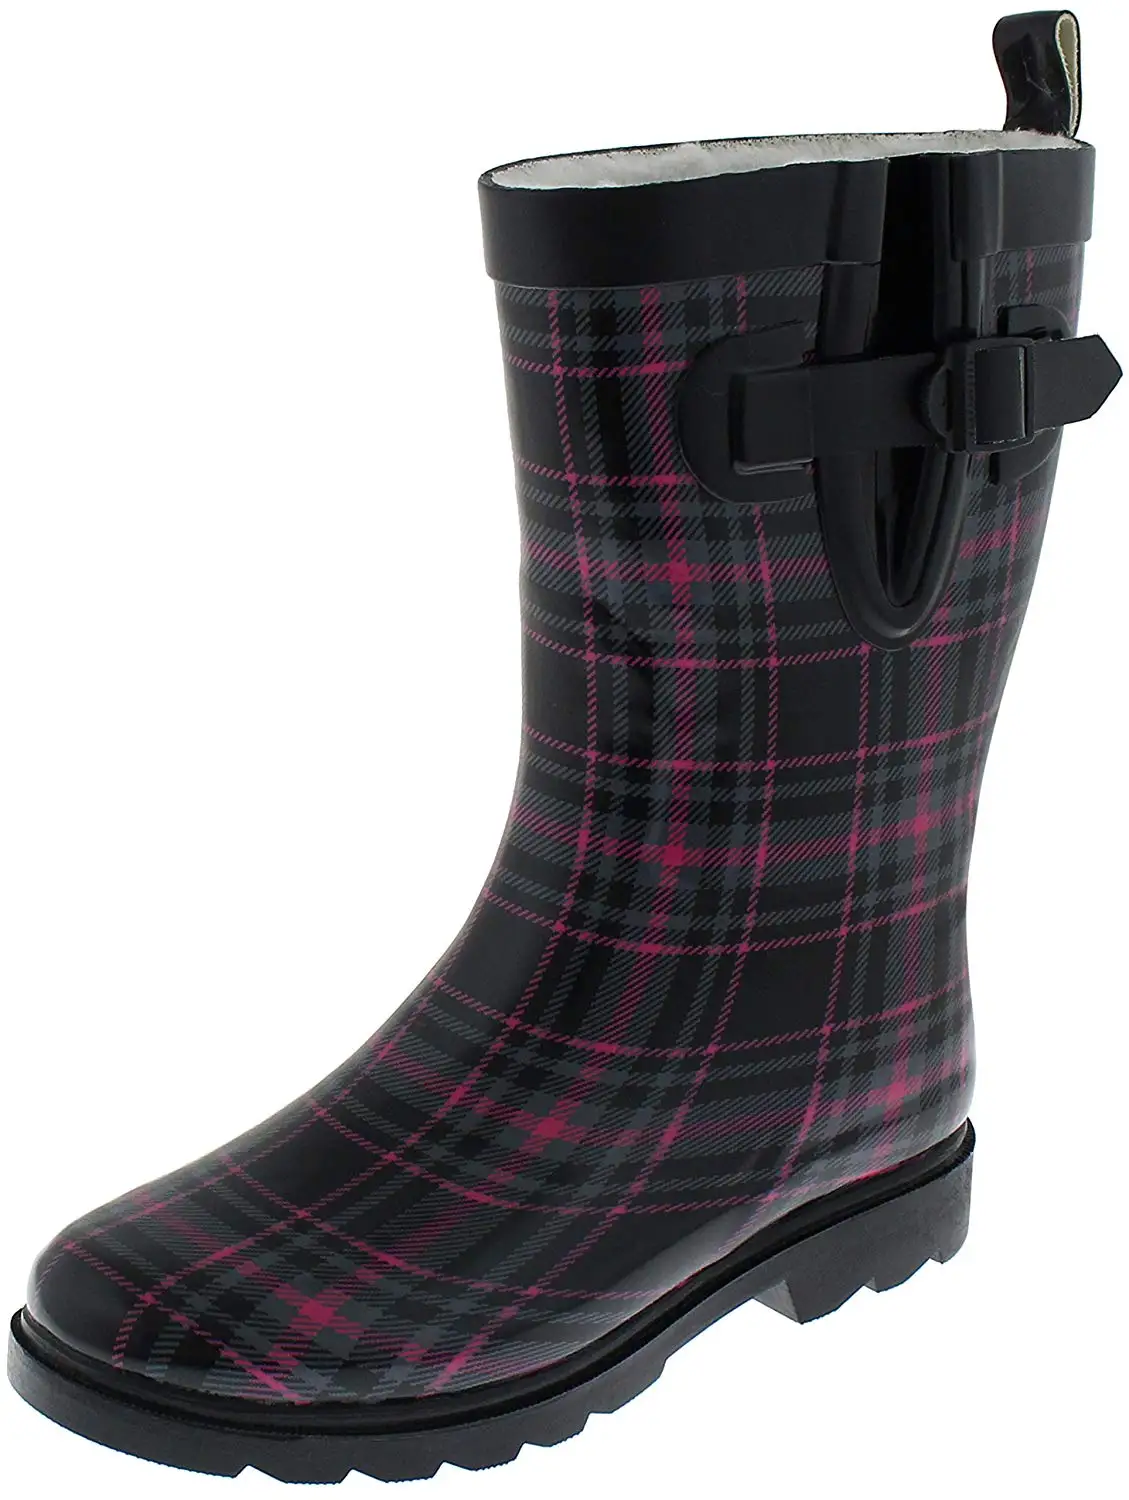 capelli rain boots for women